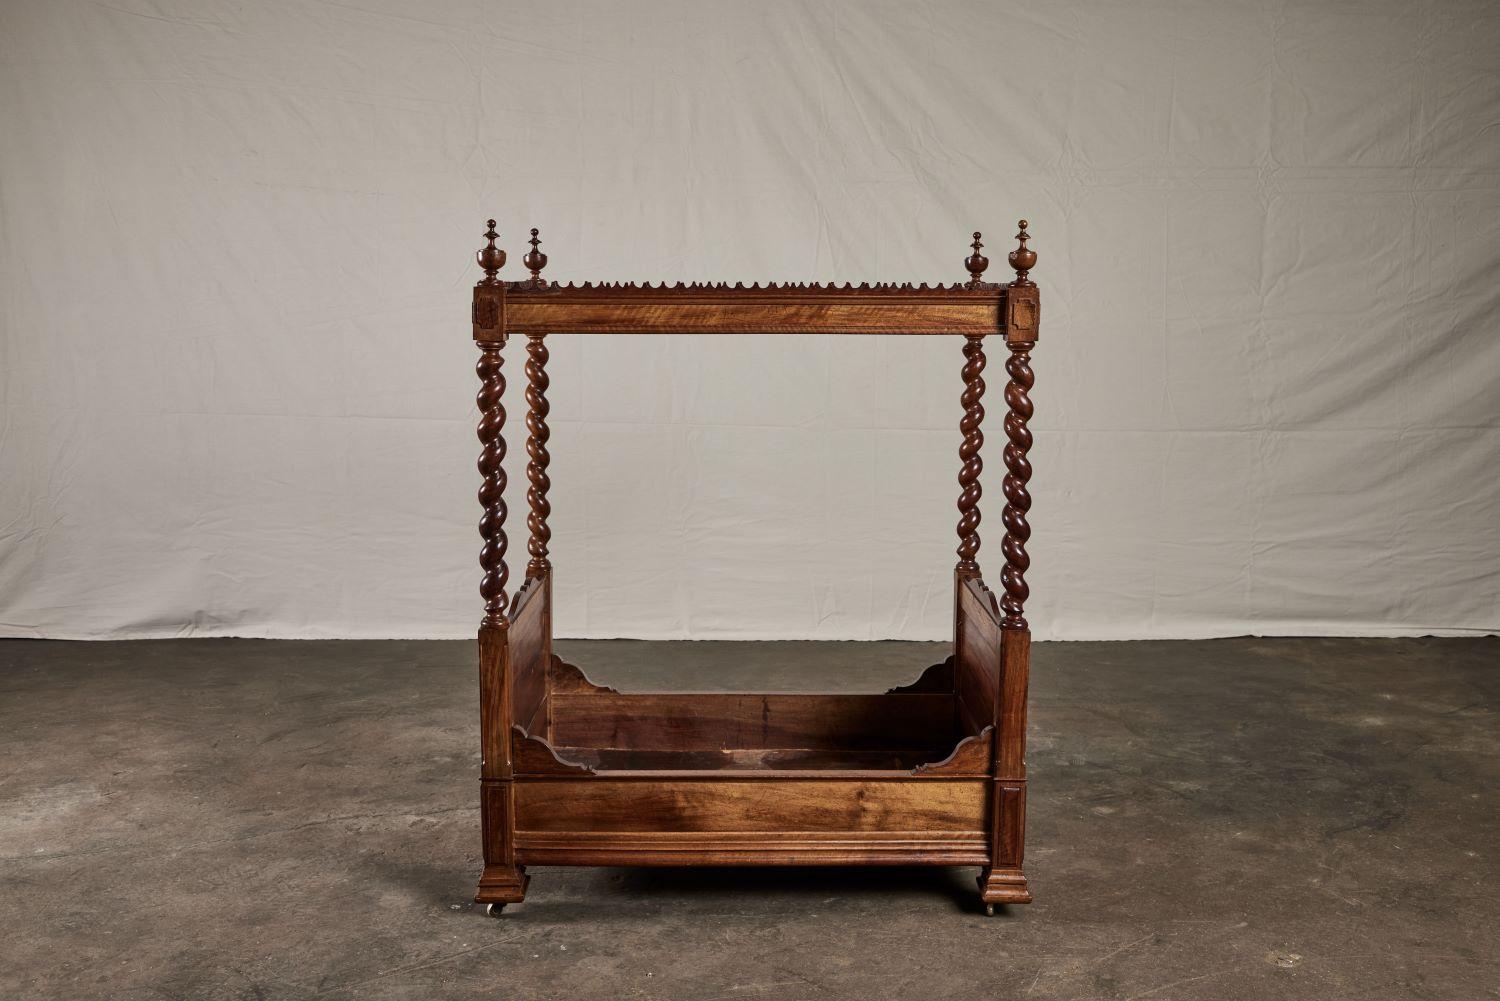 Early 19th century Italian walnut dog bed.